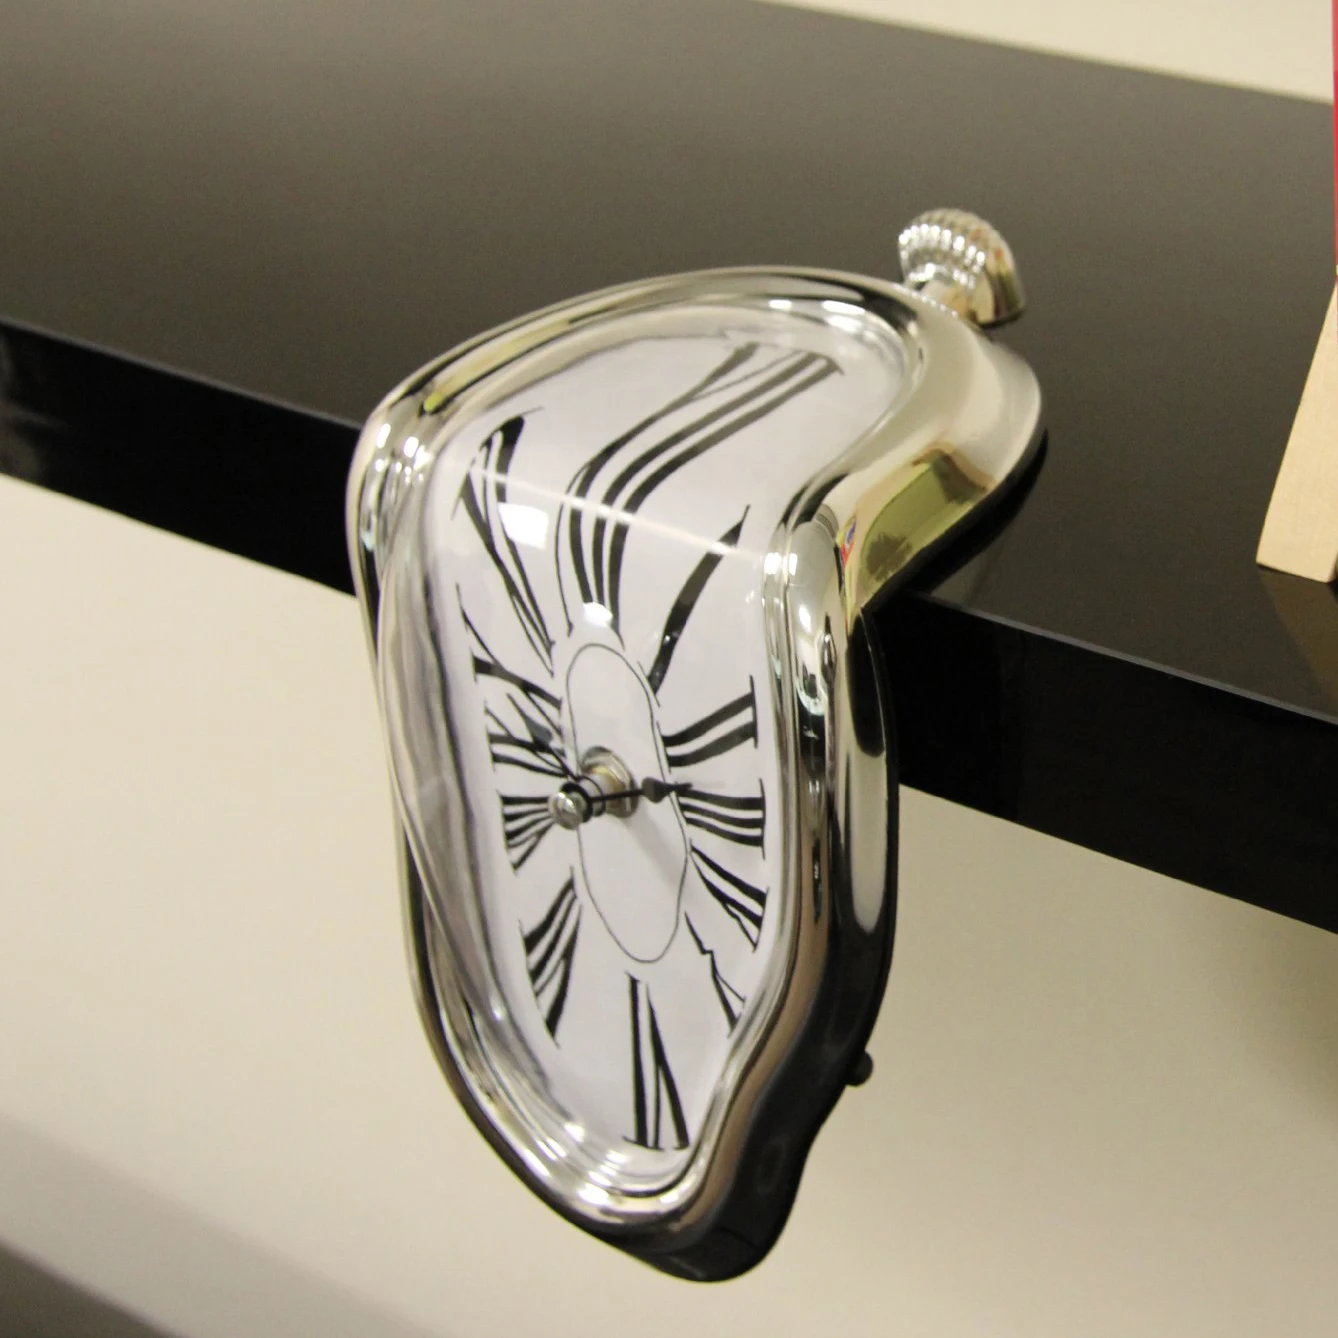 LBER плавильные часы художественные настенные часы Современные 3D большой домашний декор в стиле ретро абсолютно бесшумные украшения для спальни гостиной